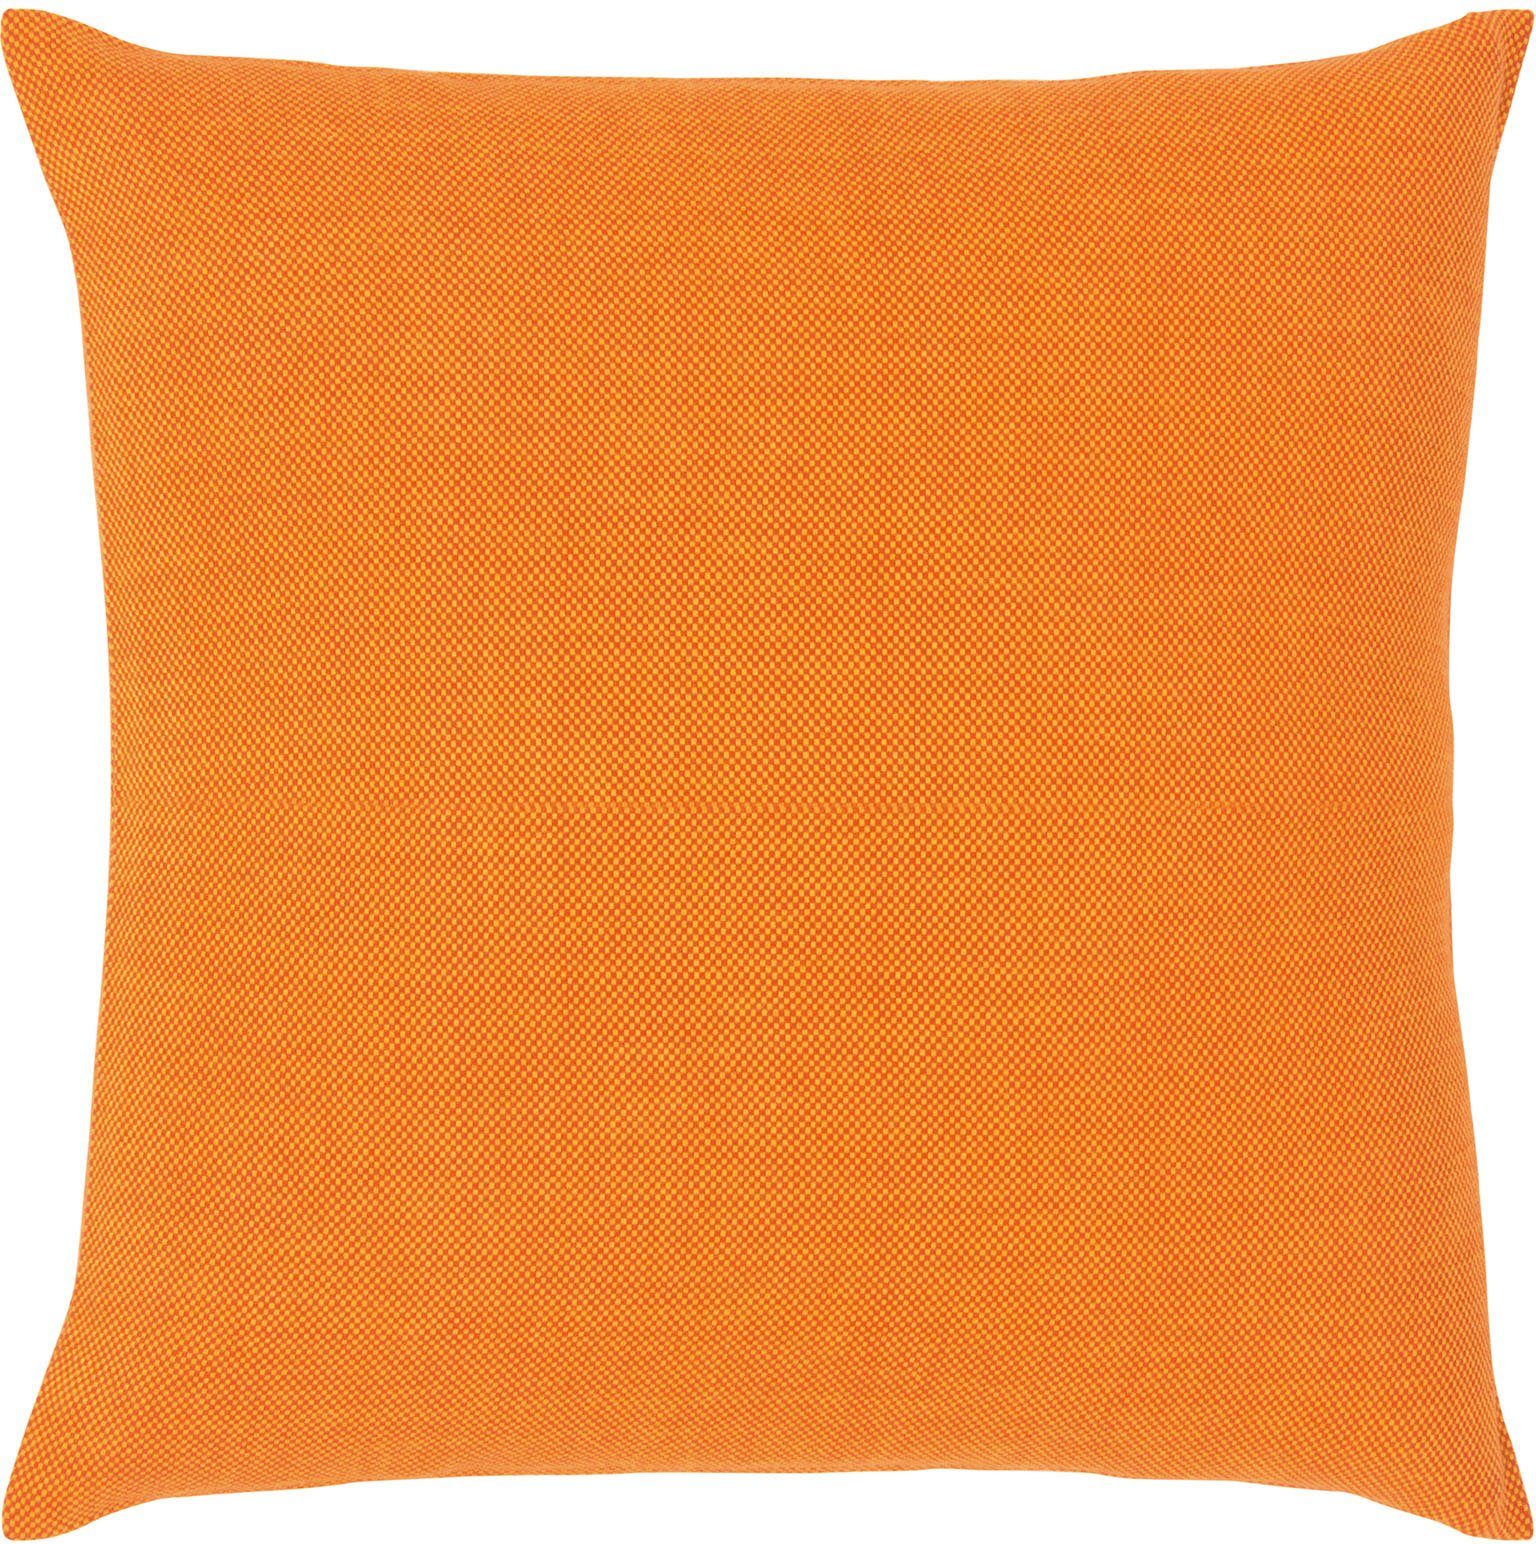 PAD Dekokissen einzigartiges Design Risotto, orange